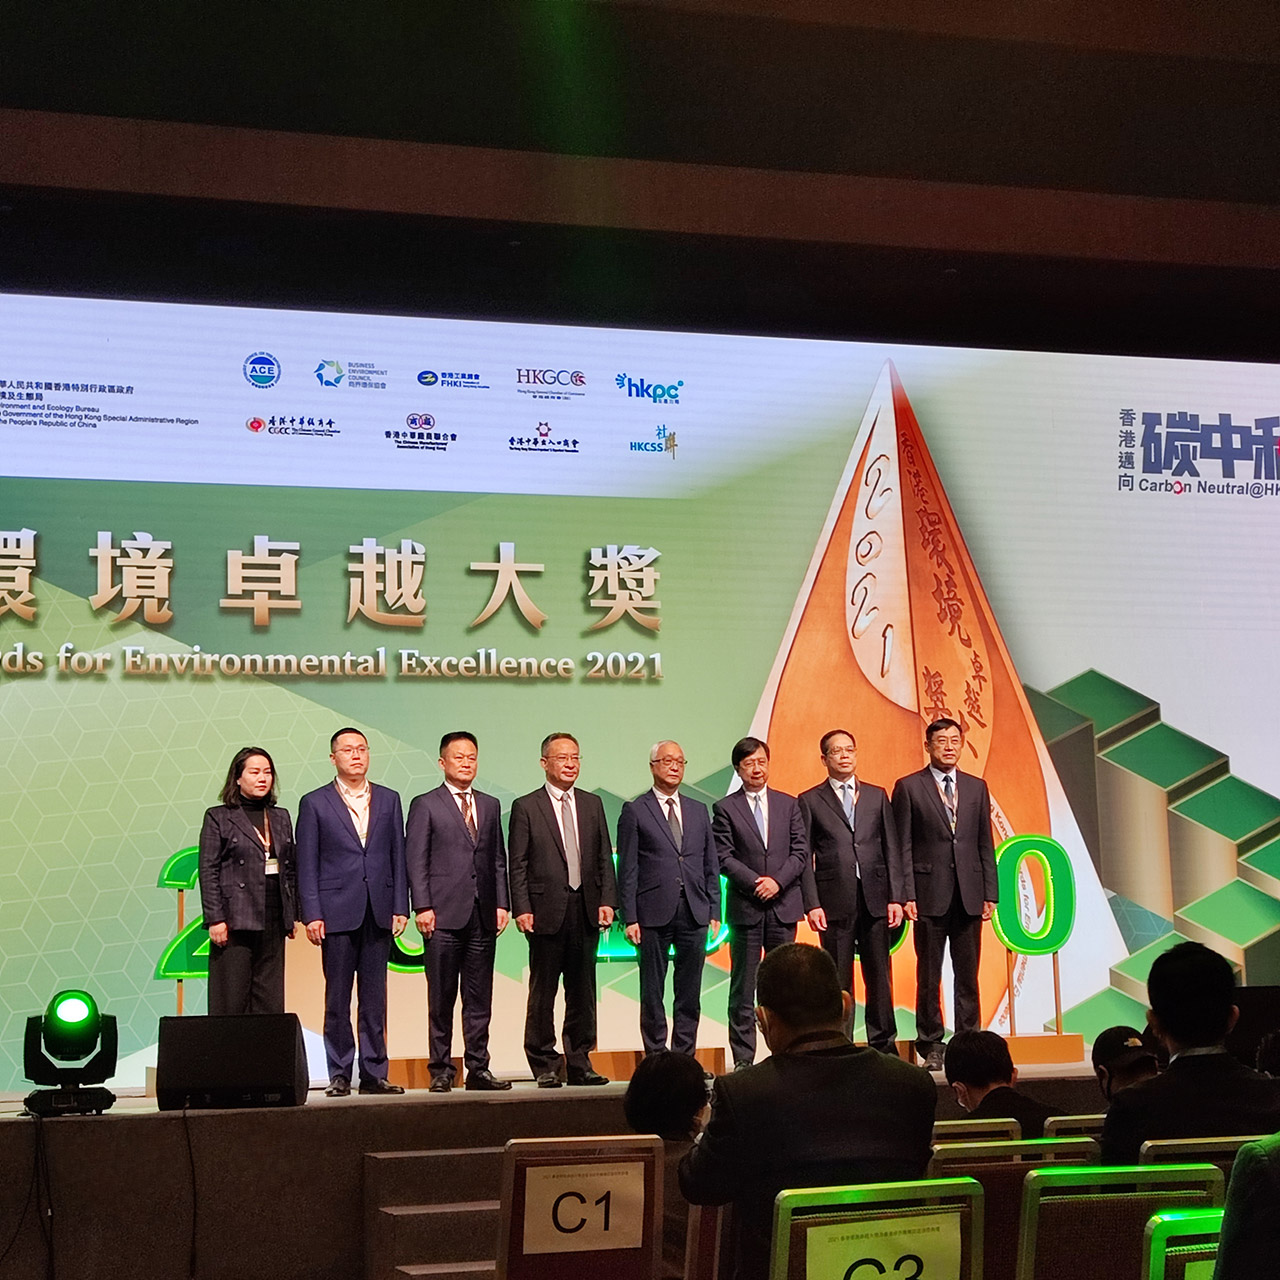 再获颁“香港环境卓越大奖暨香港绿色机构认证”证书